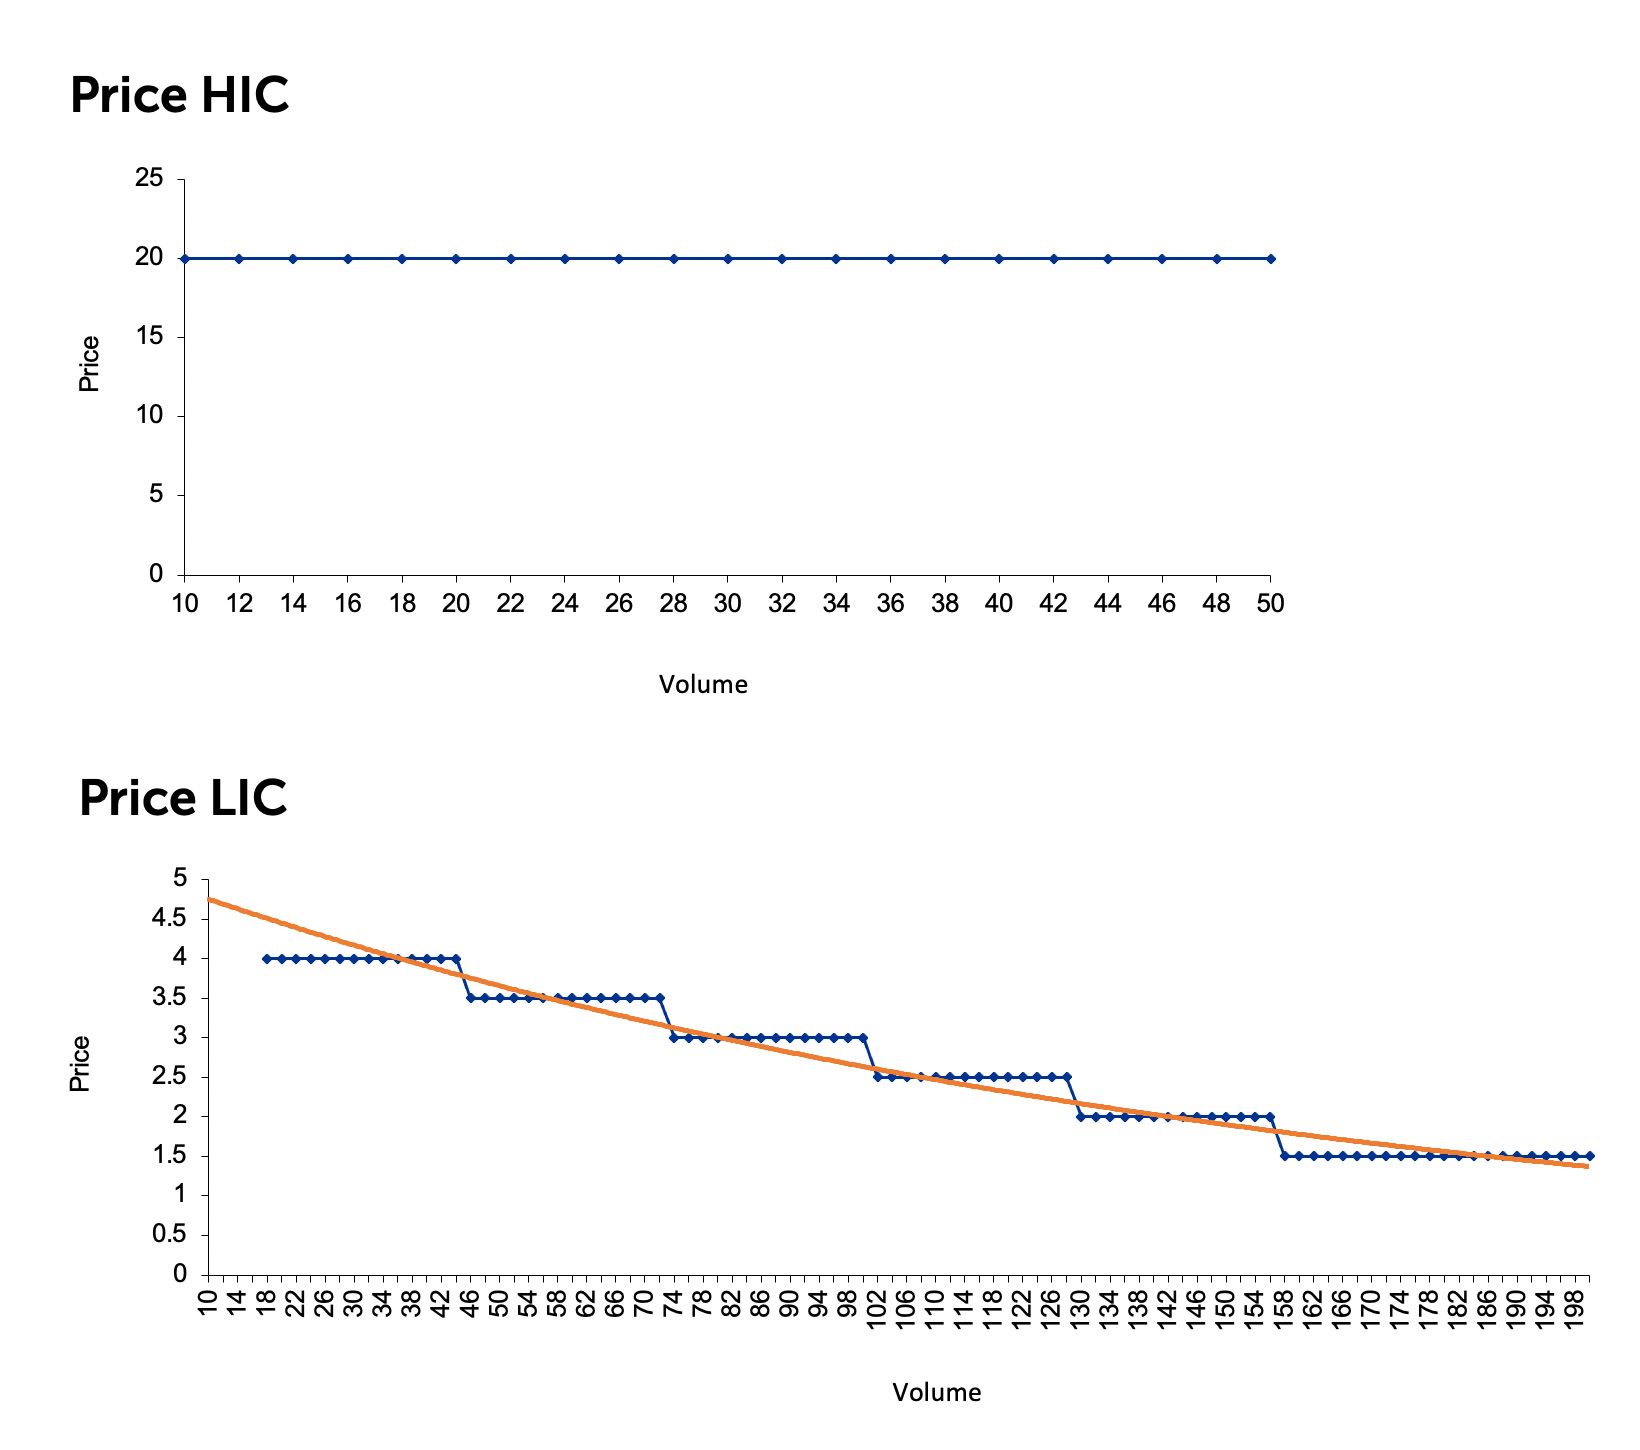 Figure 6. Vaccine Price and Volume in HIC vs LIC Markets
Source: KPMG Economic Services, 2020.
